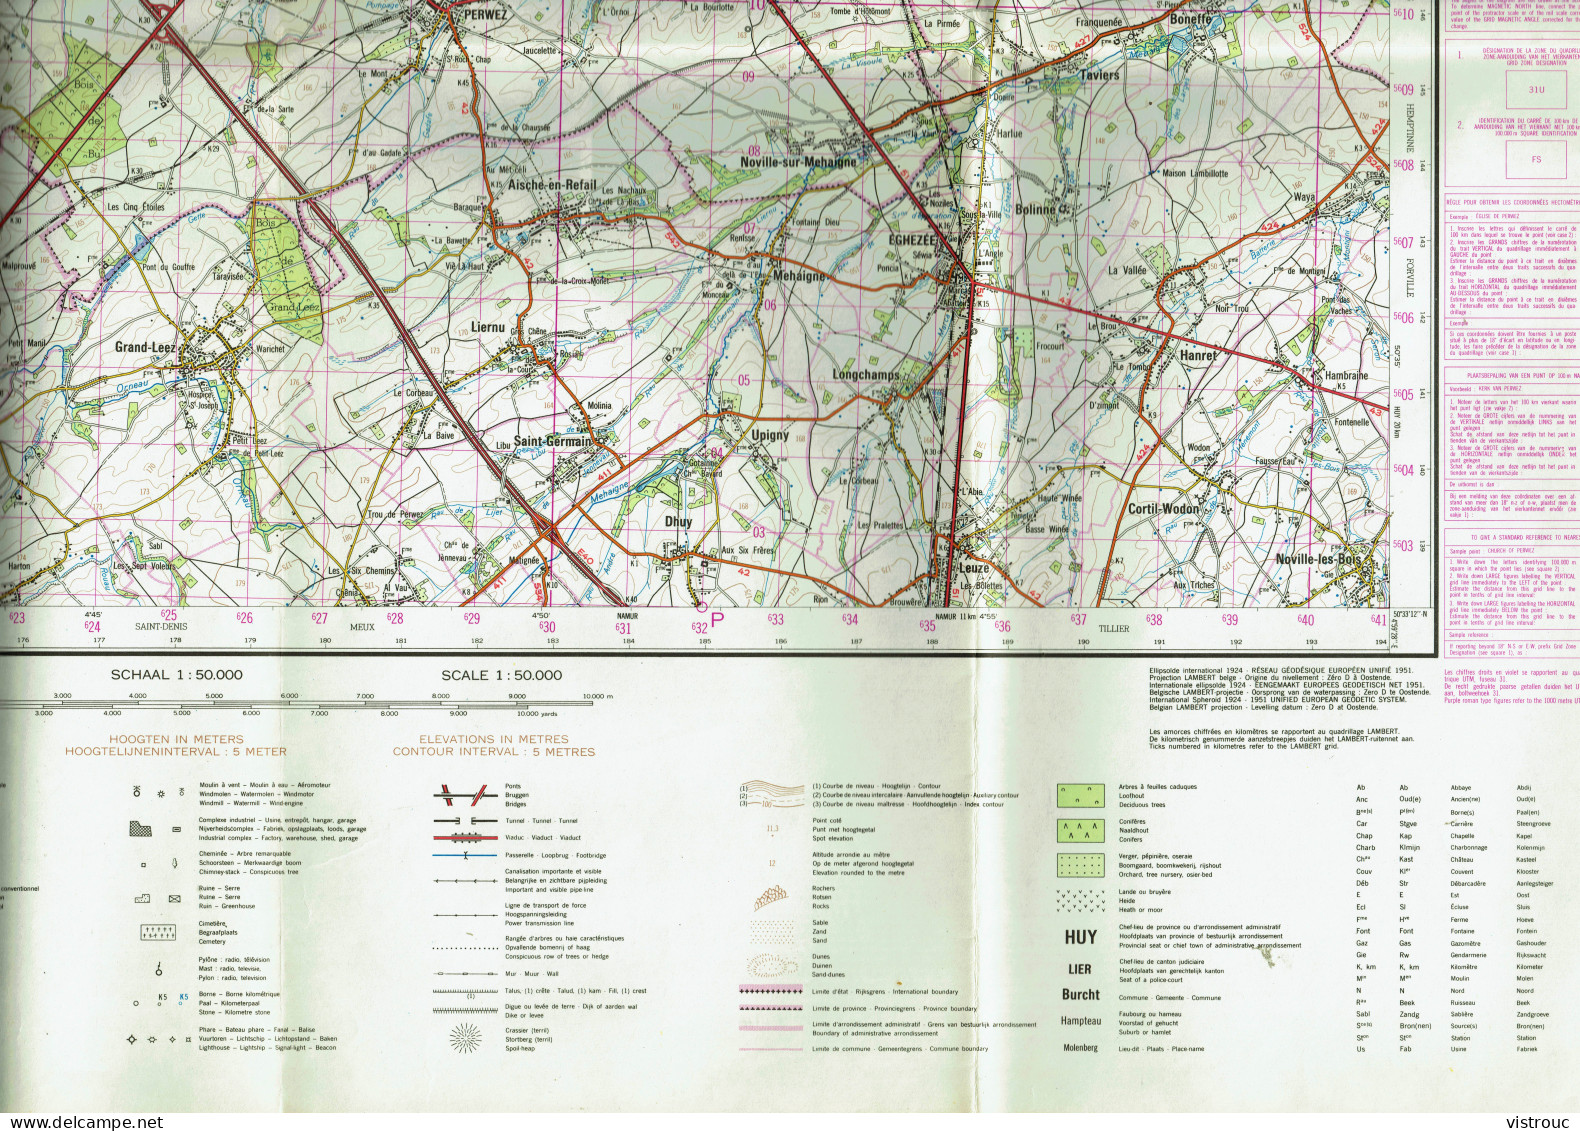 Institut Géographique Militaire Be - "WAVRE" - N° 40 - Edition: 1974 - Echelle 1/50.000 - Carte Topografiche